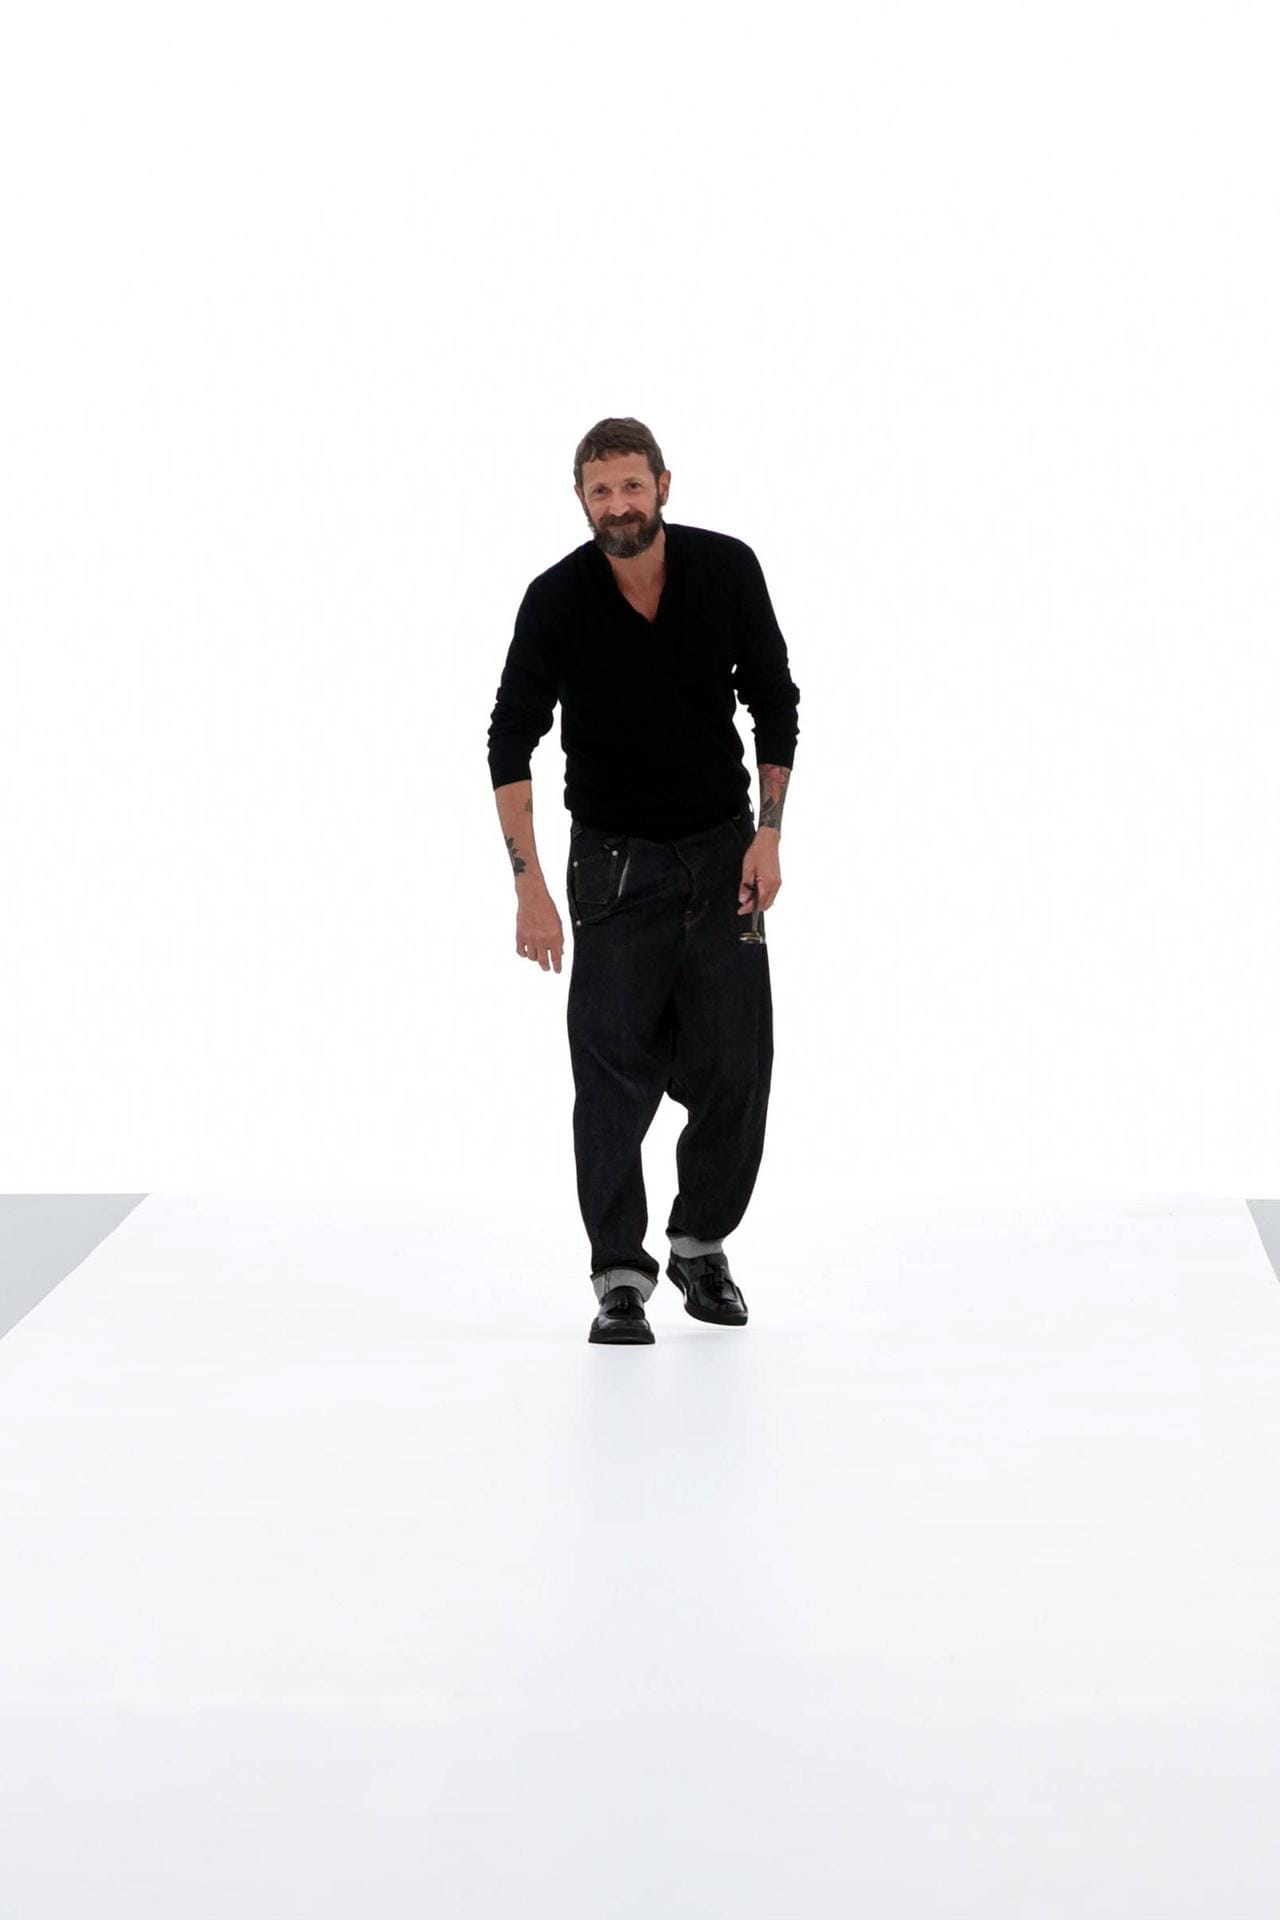 Der Mailänder Stefano Pilati (im Bild) belegt Platz drei. Er arbeitete als Designer bereits für Yves Saint Laurent - jetzt ist er Chefdesigner des Labels Ermenegildo Zegna.